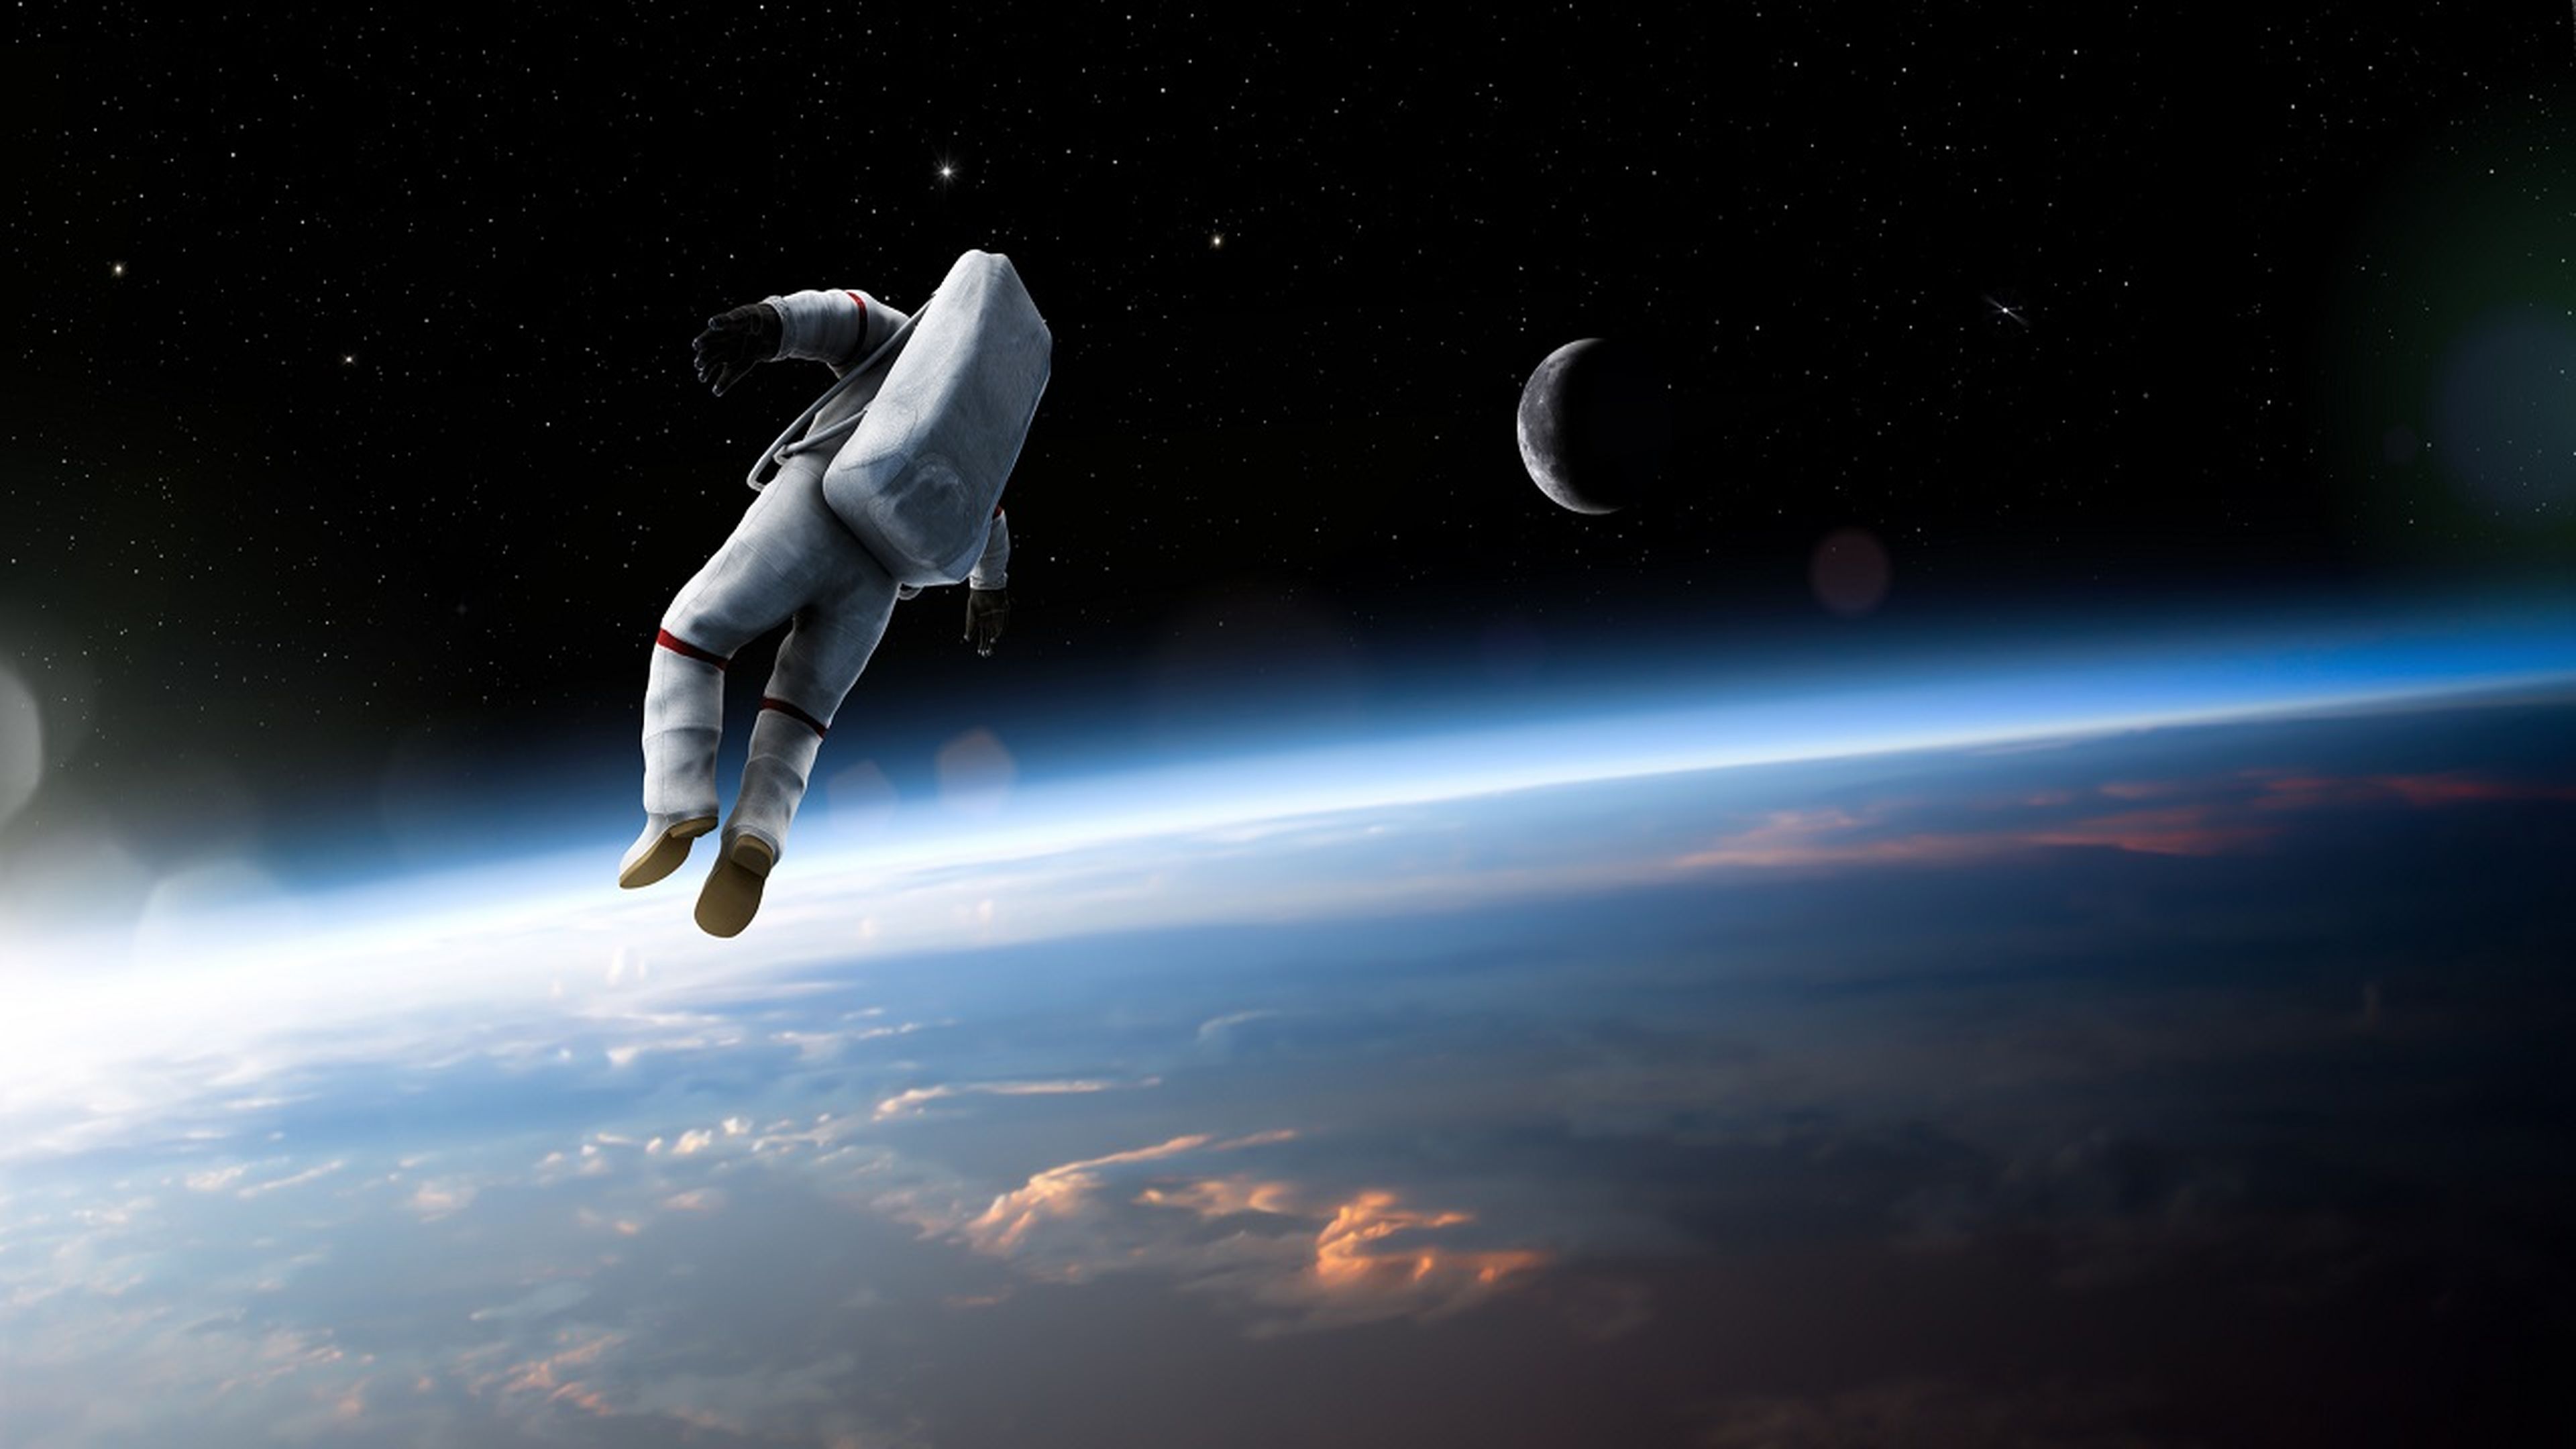 ¿Qué le sucedería si un astronauta fallece en el espacio?